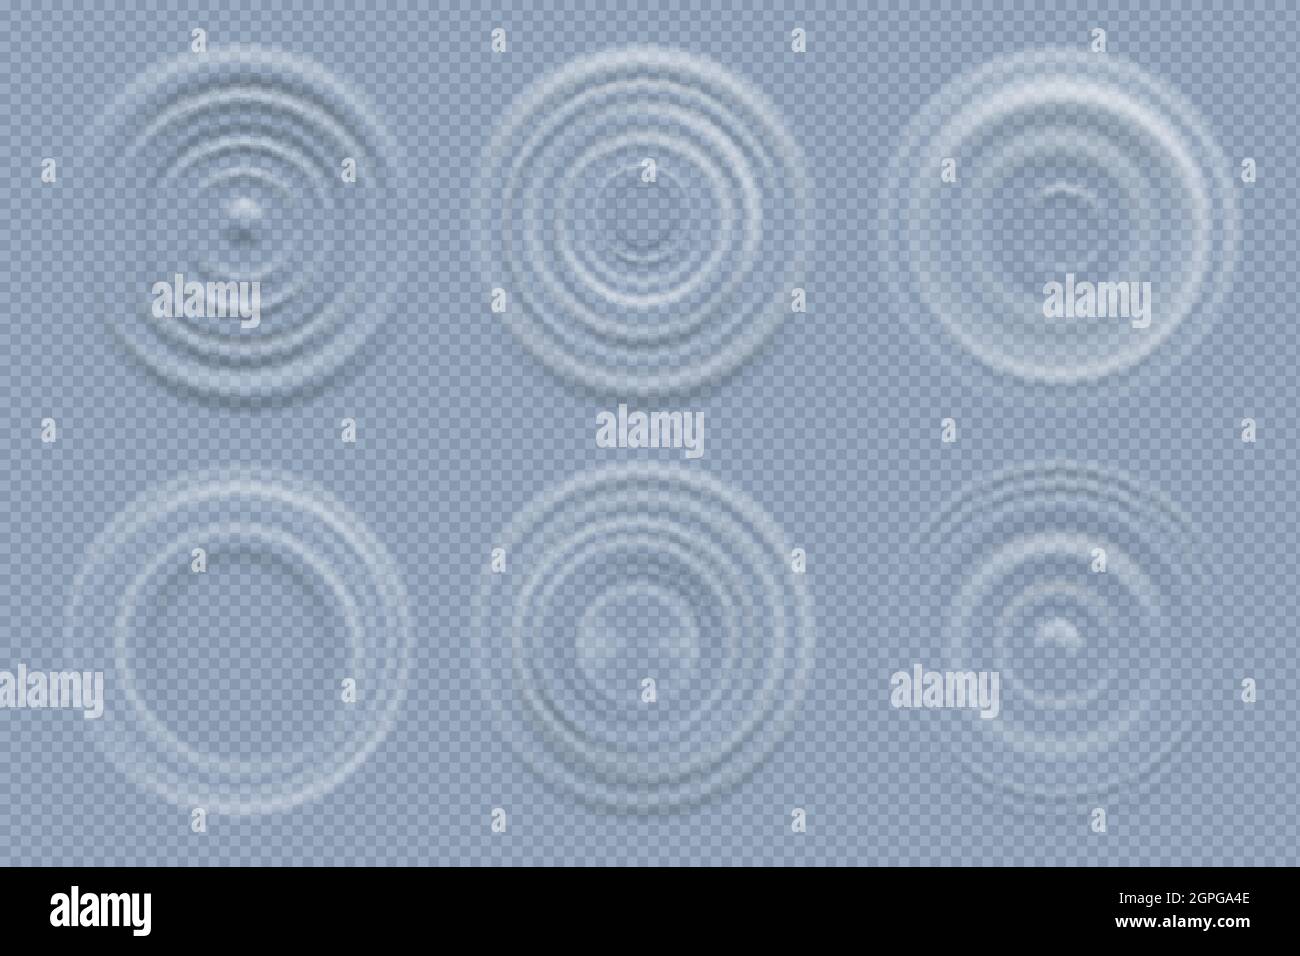 Wasserkreise. Realistische runde Formen von Flüssigkeiten Draufsicht Wellen Vektor-Vorlage Stock Vektor